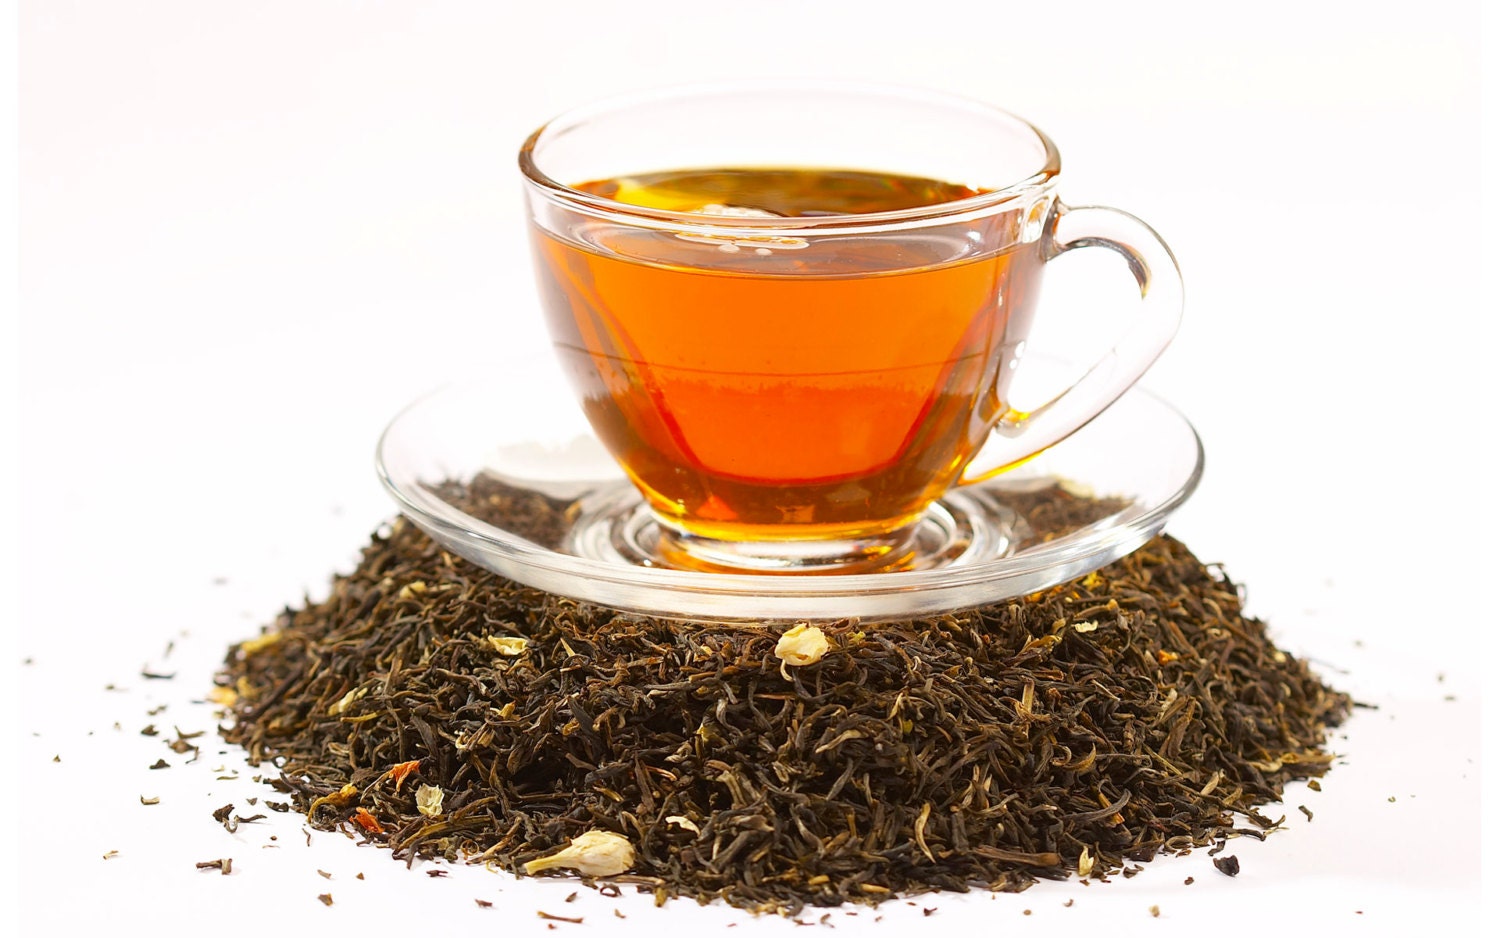 Tea Loose Sampler 32 Blends Of Hand Blended Loose Leaf Tea 1 Ounce Each